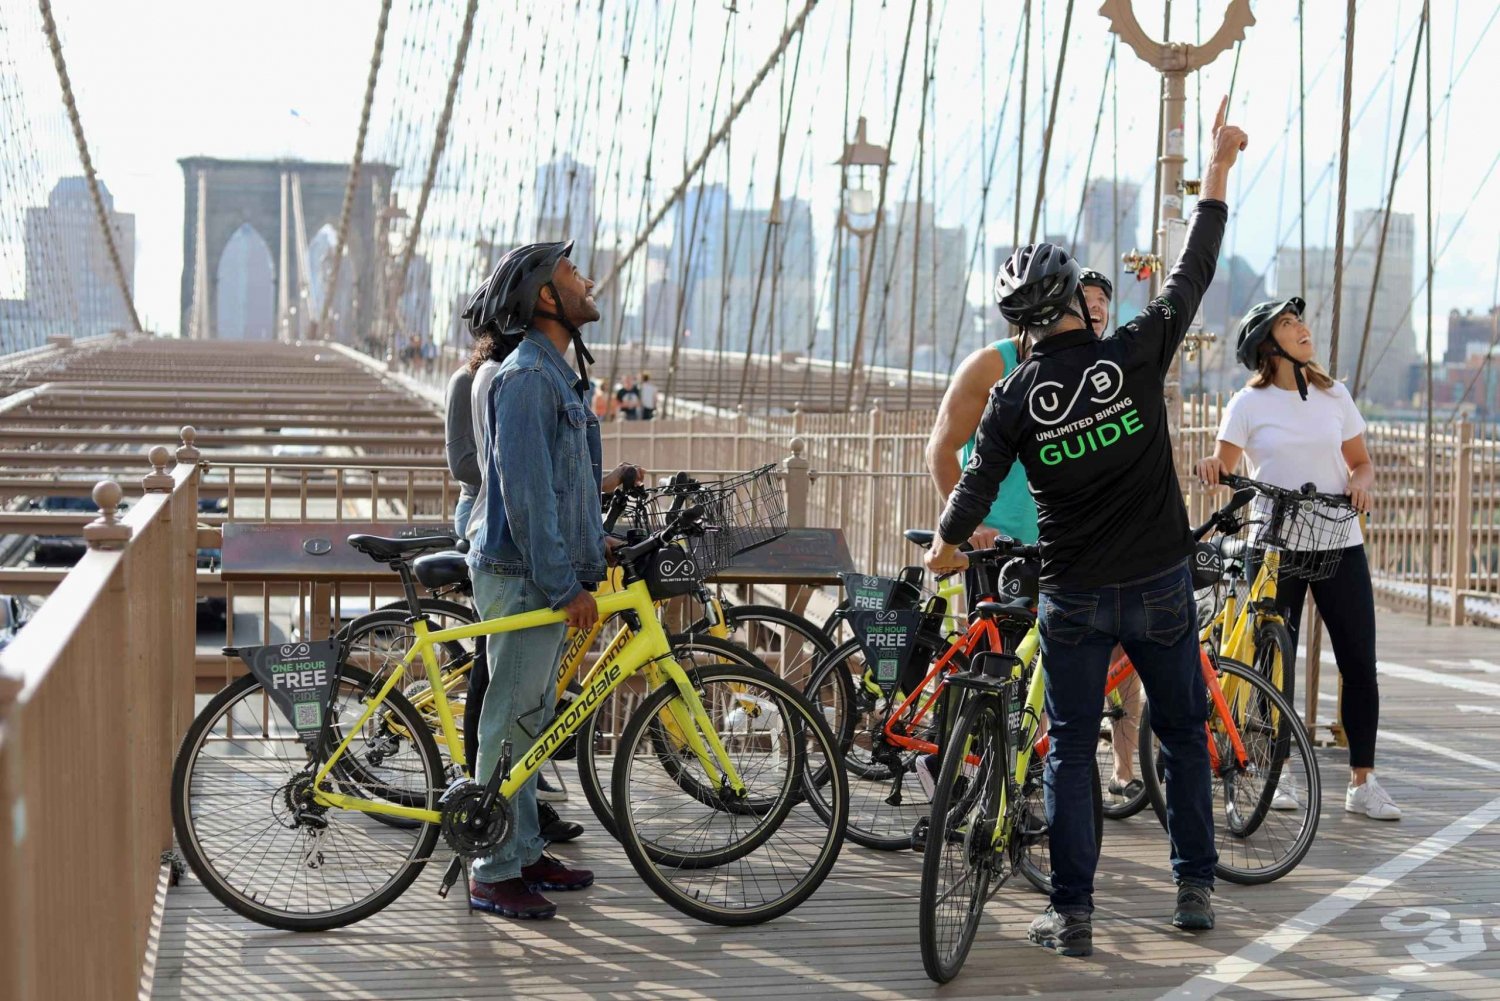 Ponte di Brooklyn: tour in bici di 2 ore da Manhattan